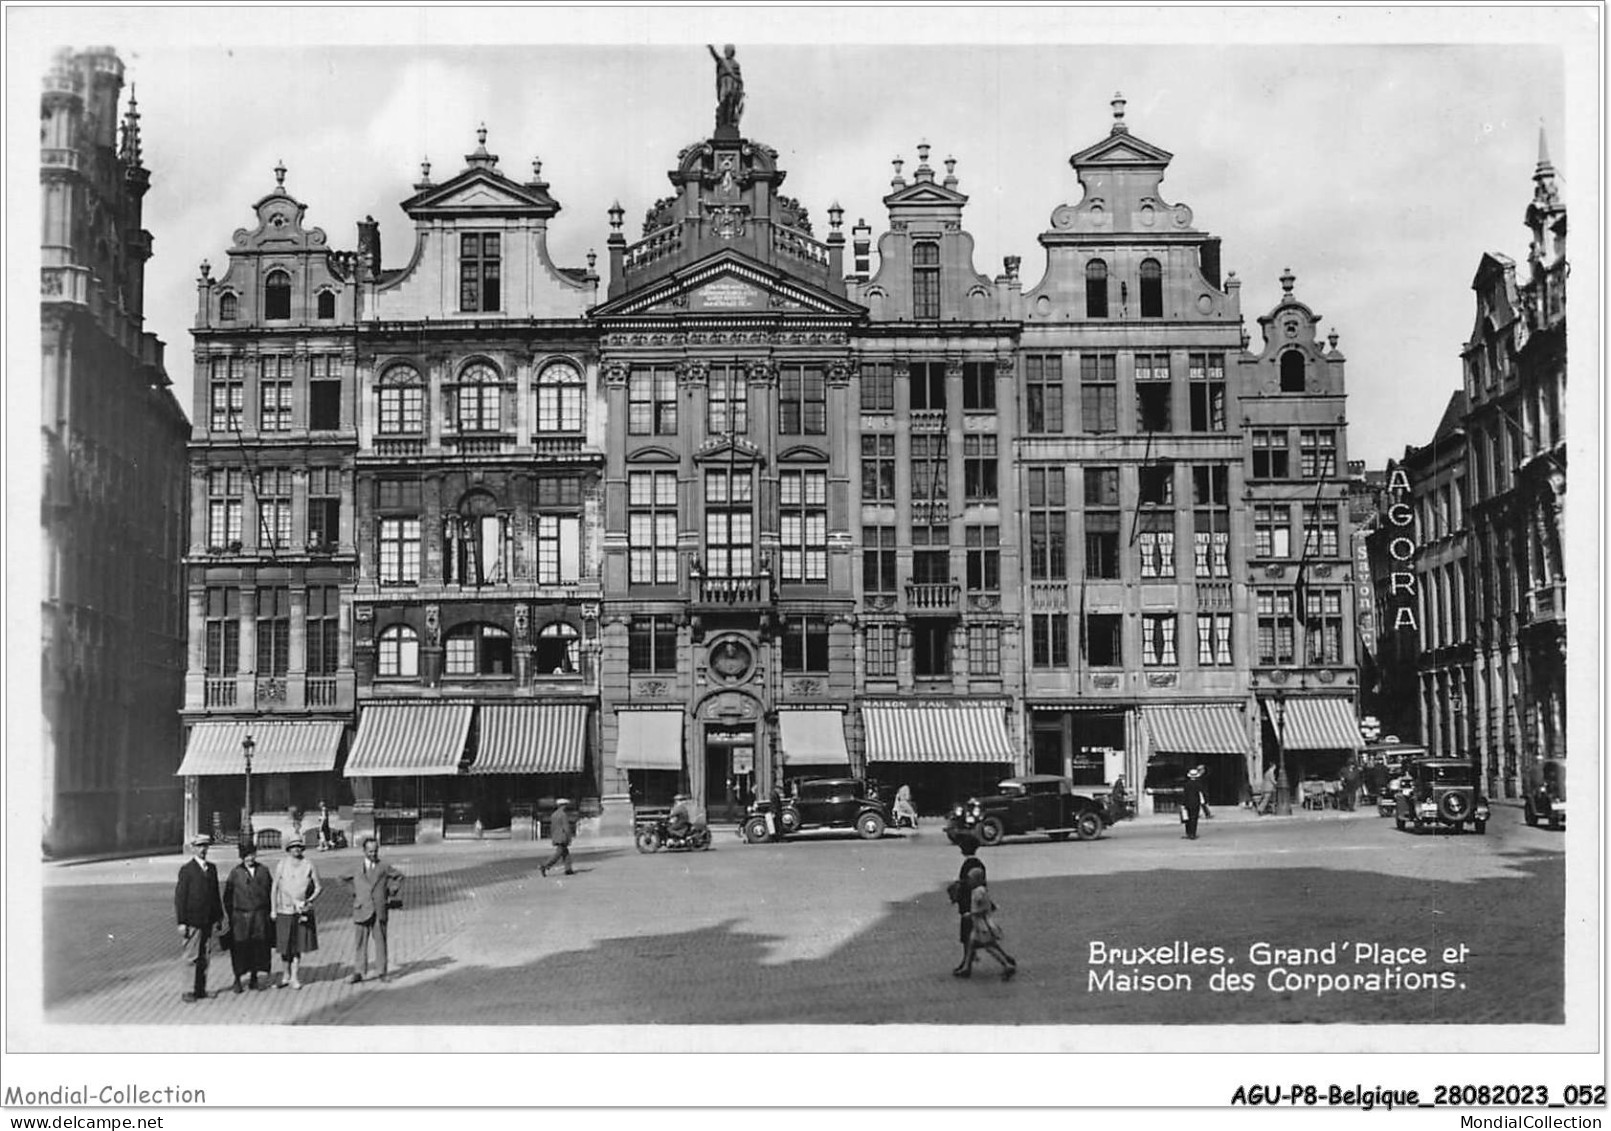 AGUP8-0653-BELGIQUE - BRUXELLES - Grand'place Et Maison Des Corporations - Marktpleinen, Pleinen